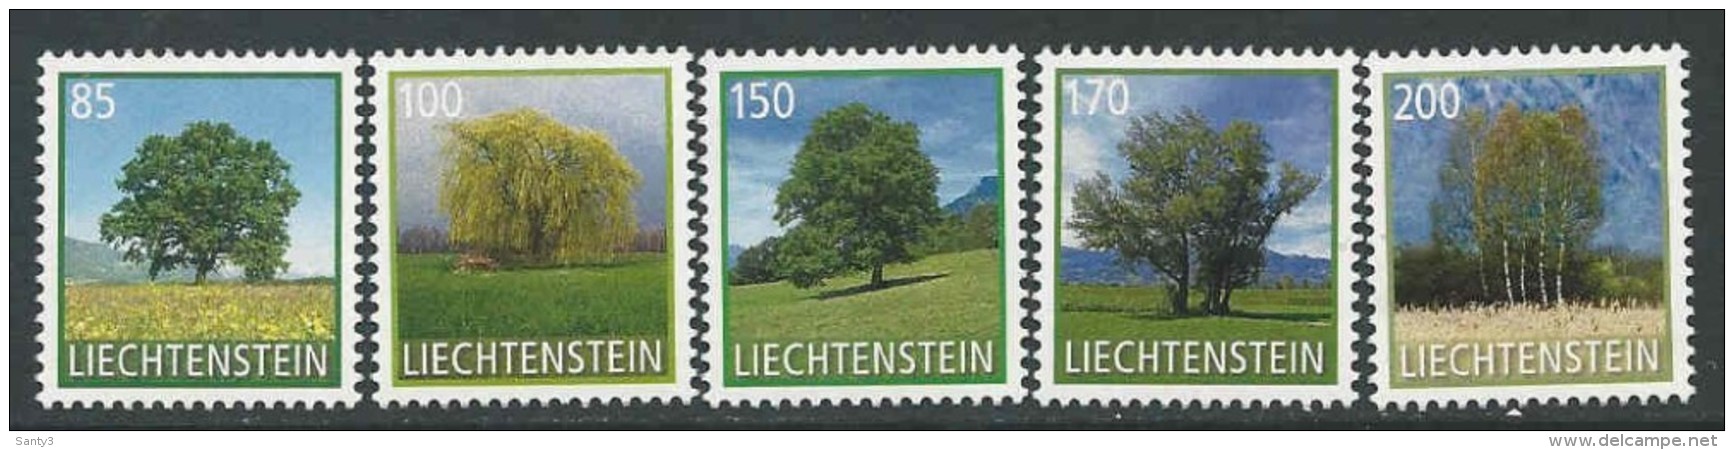 Liechtenstein, Mi Jaar 2016, Reeks,  Postfris (MNH) Zie Scan - Ungebraucht